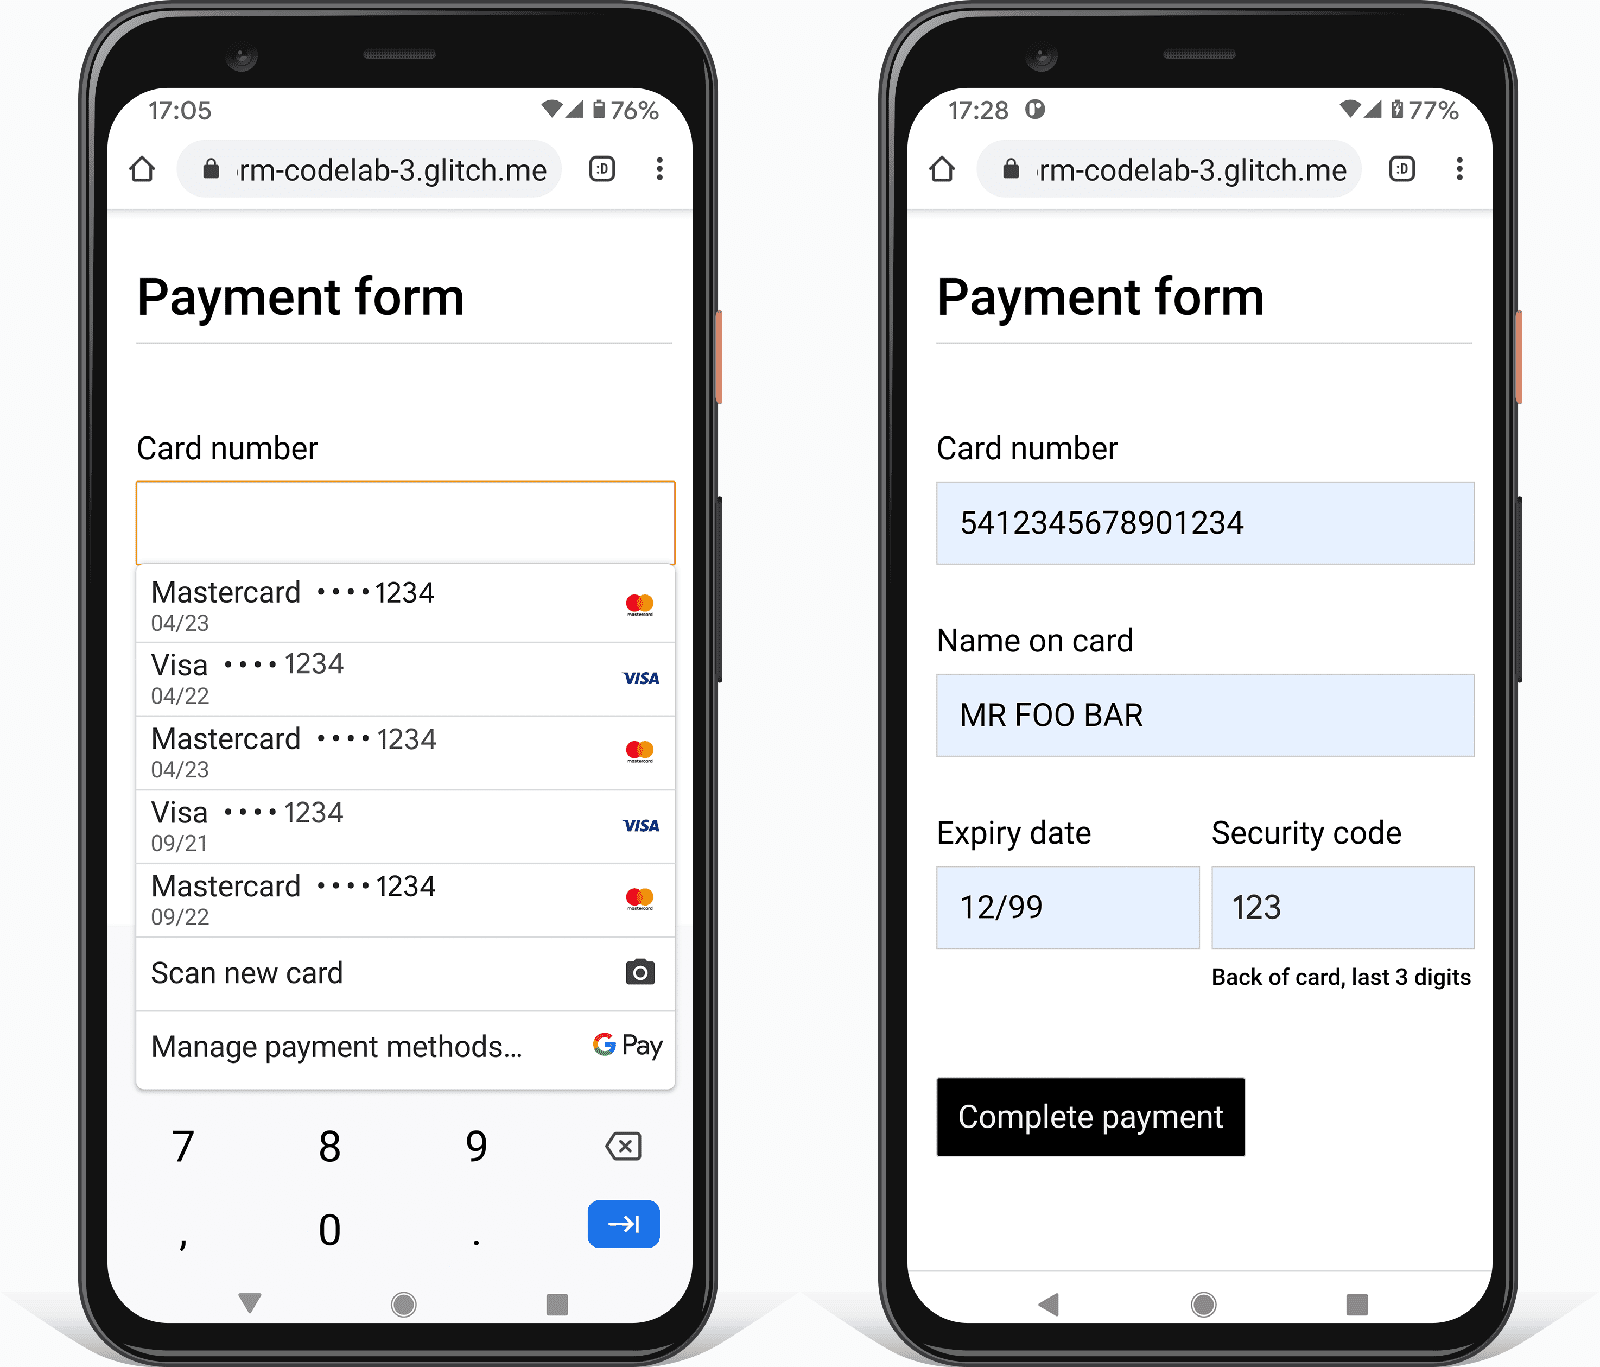 Android スマートフォンの Chrome の支払いフォームのスクリーンショット 2 枚。1 つは組み込みのブラウザ支払いカード セレクタ、もう 1 つはプレースホルダの自動入力値を示しています。